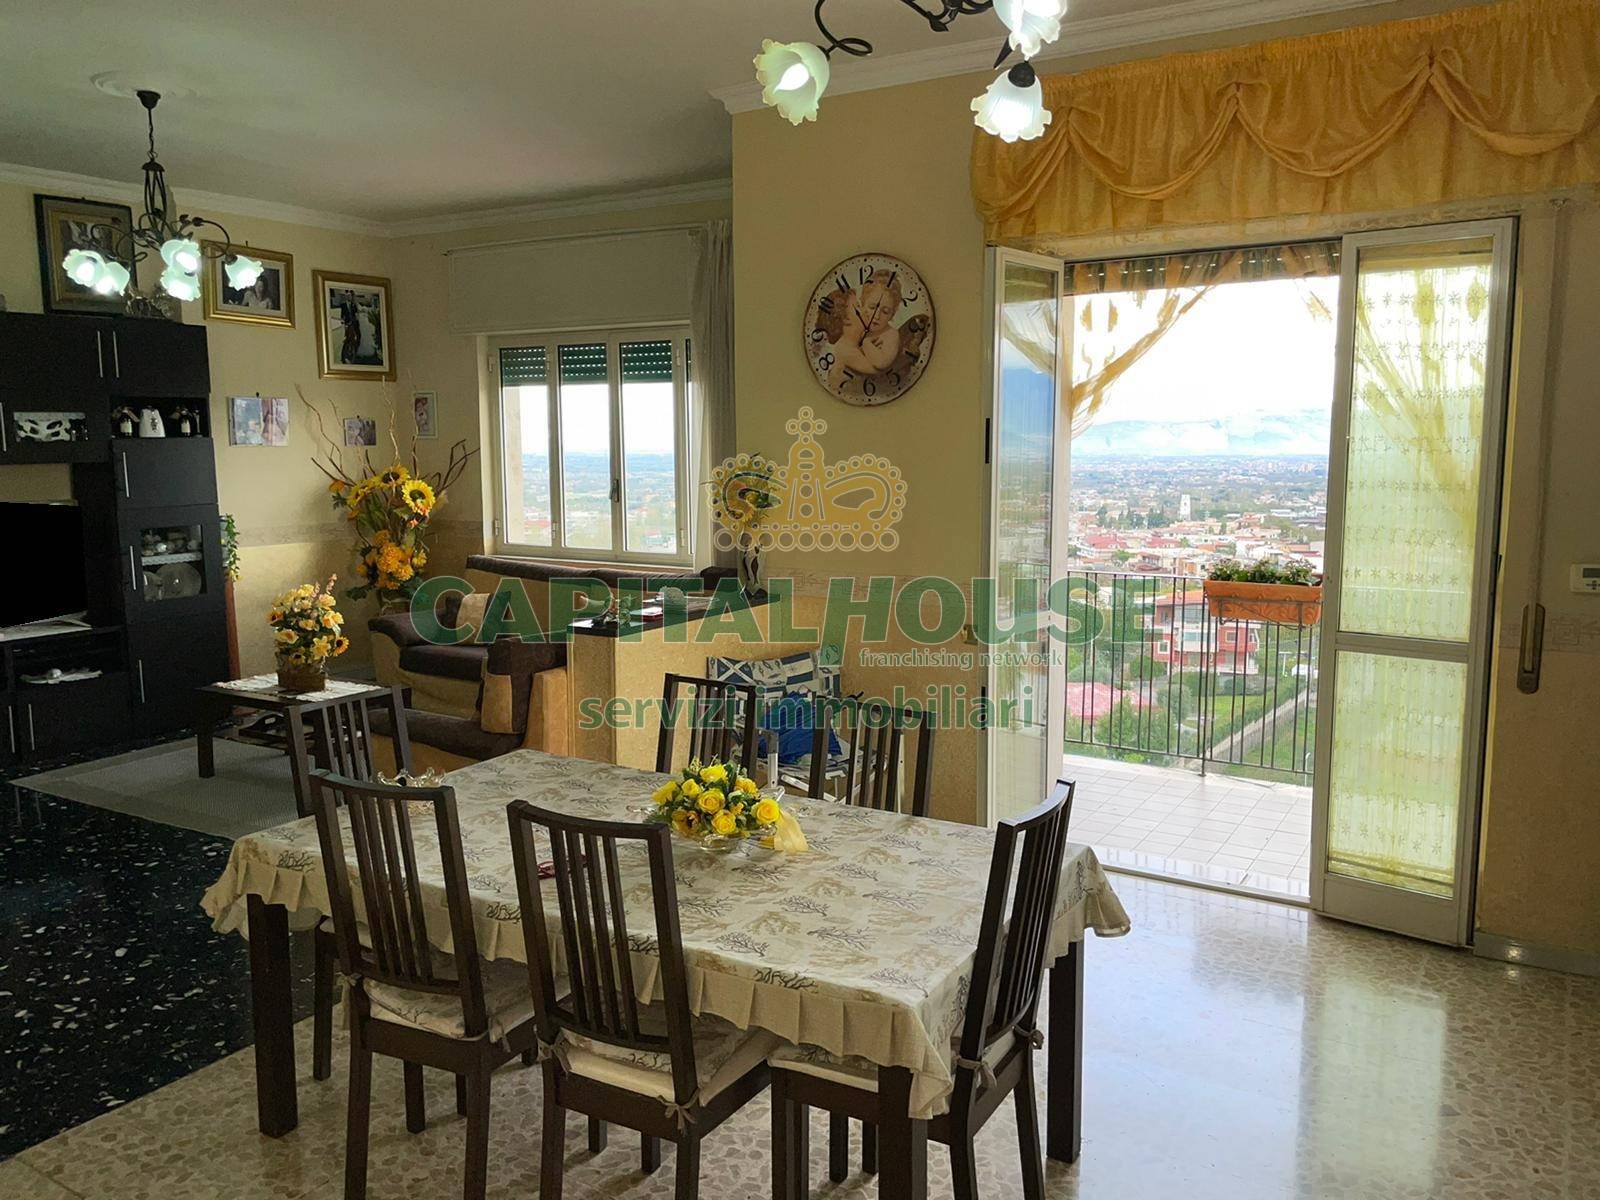 Appartamento in vendita a Somma Vesuviana, 4 locali, prezzo € 156.000 | CambioCasa.it